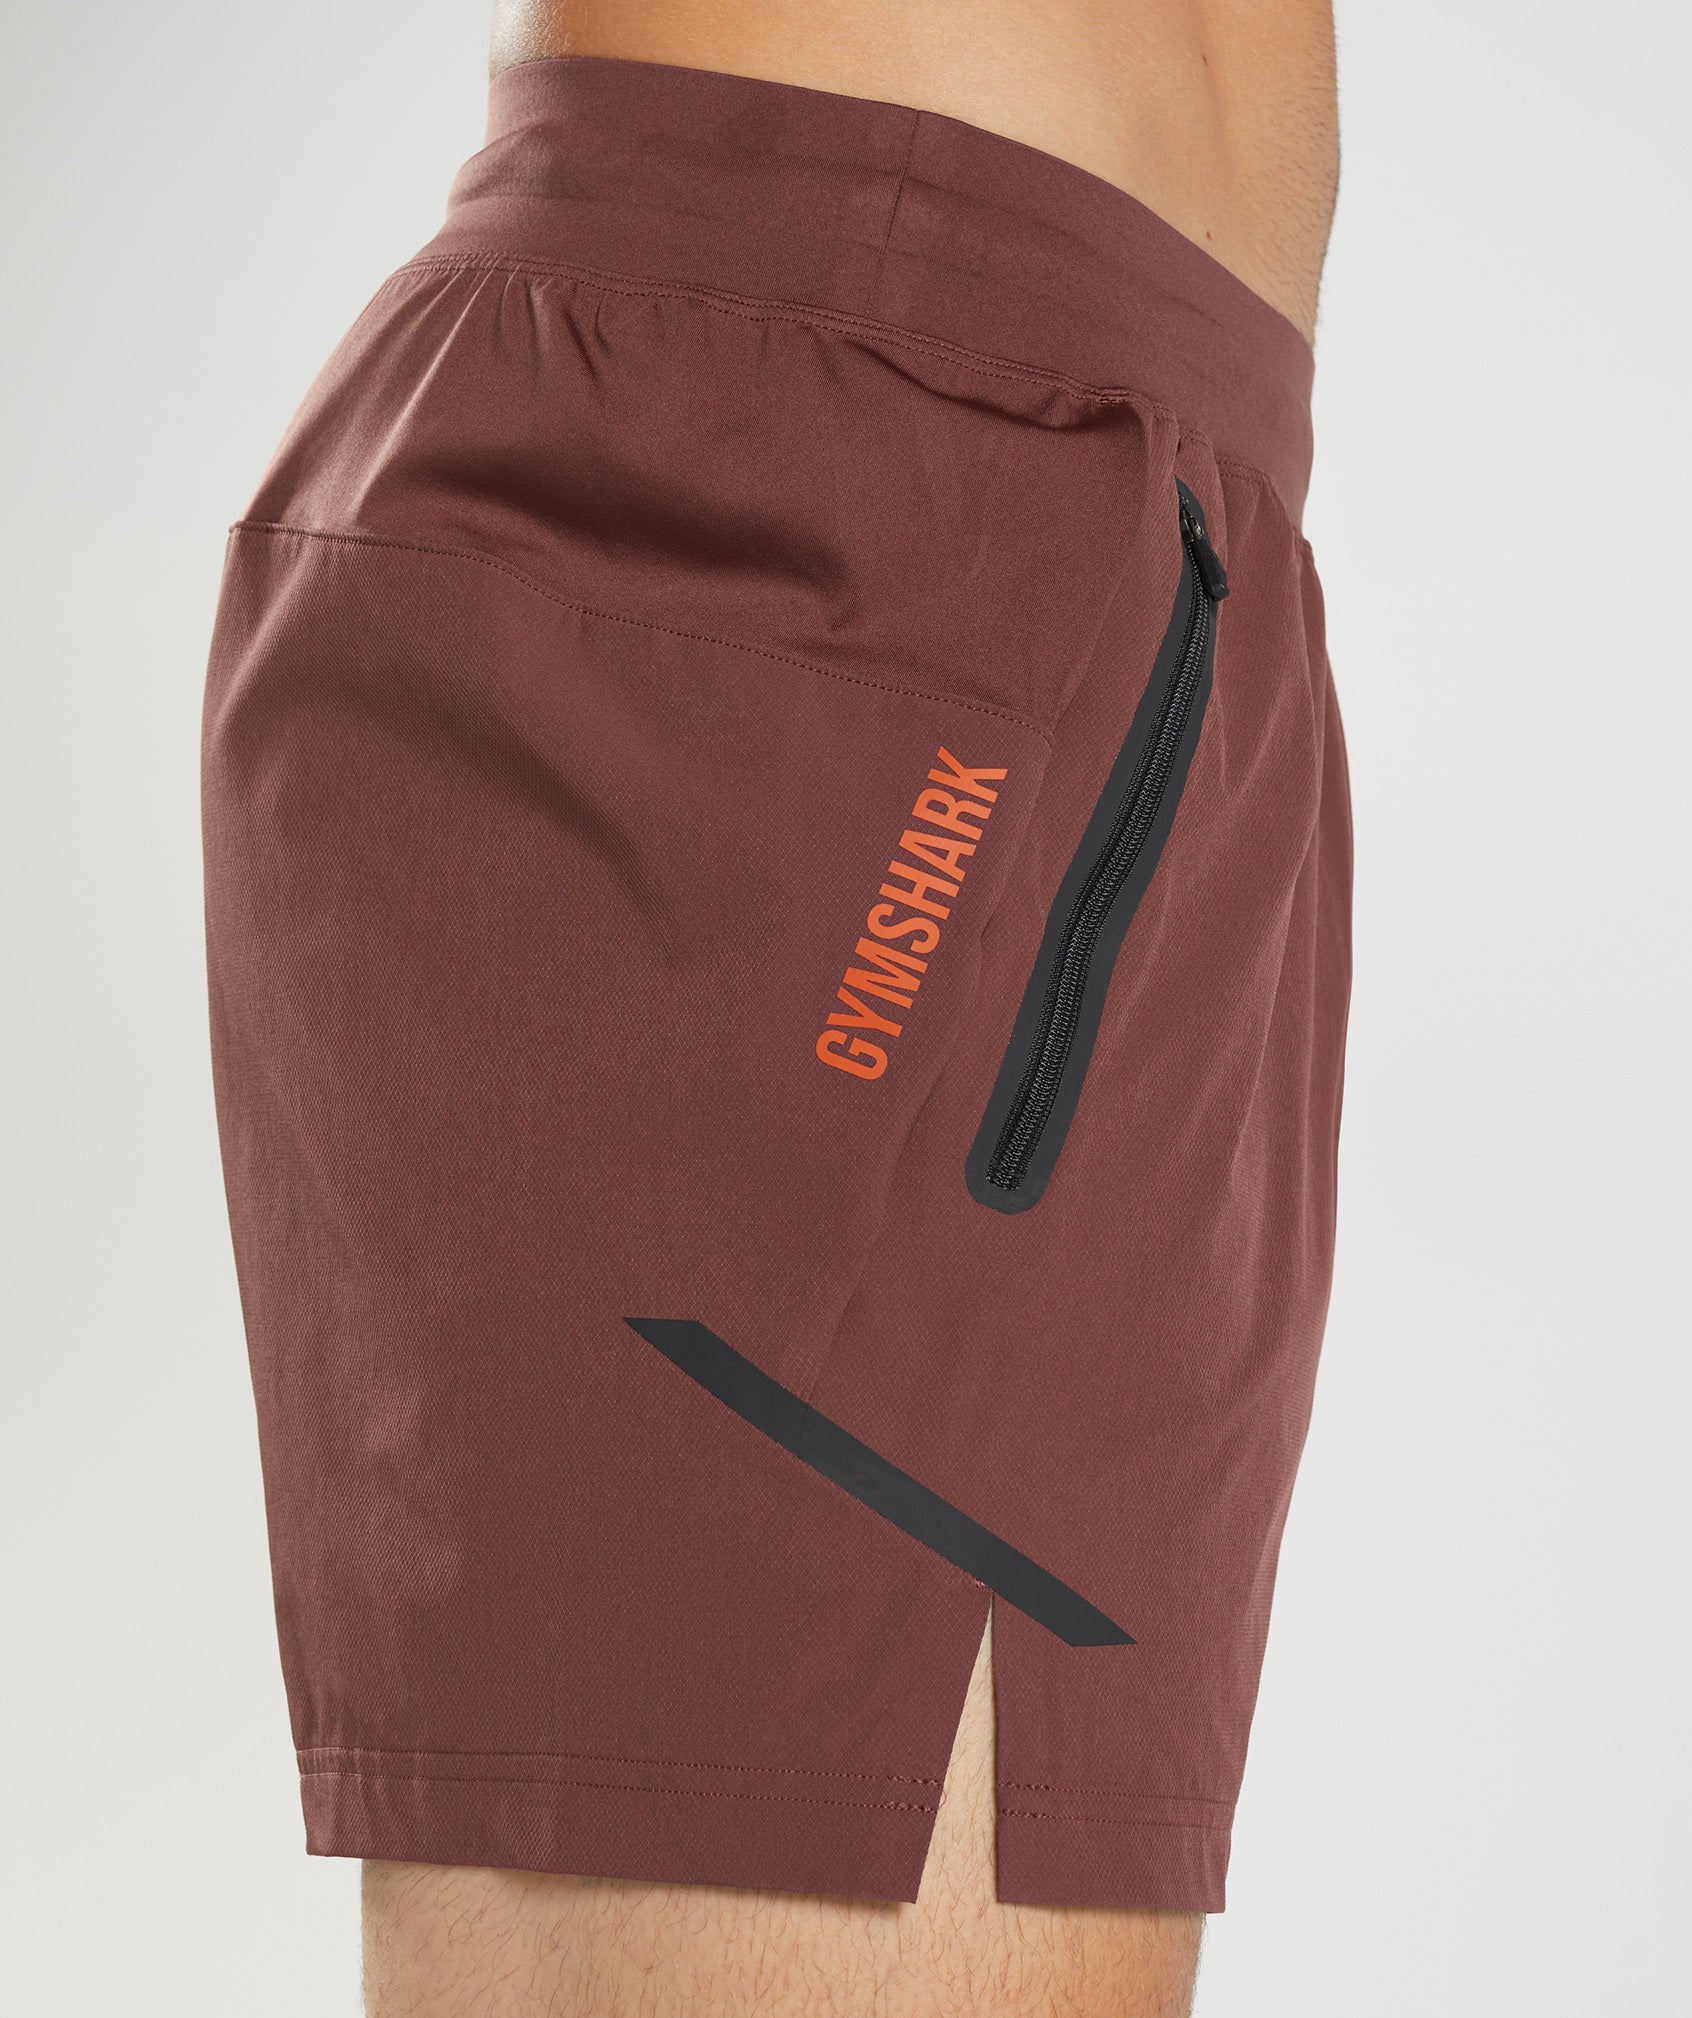 Apex 5 Hybrid Shorts